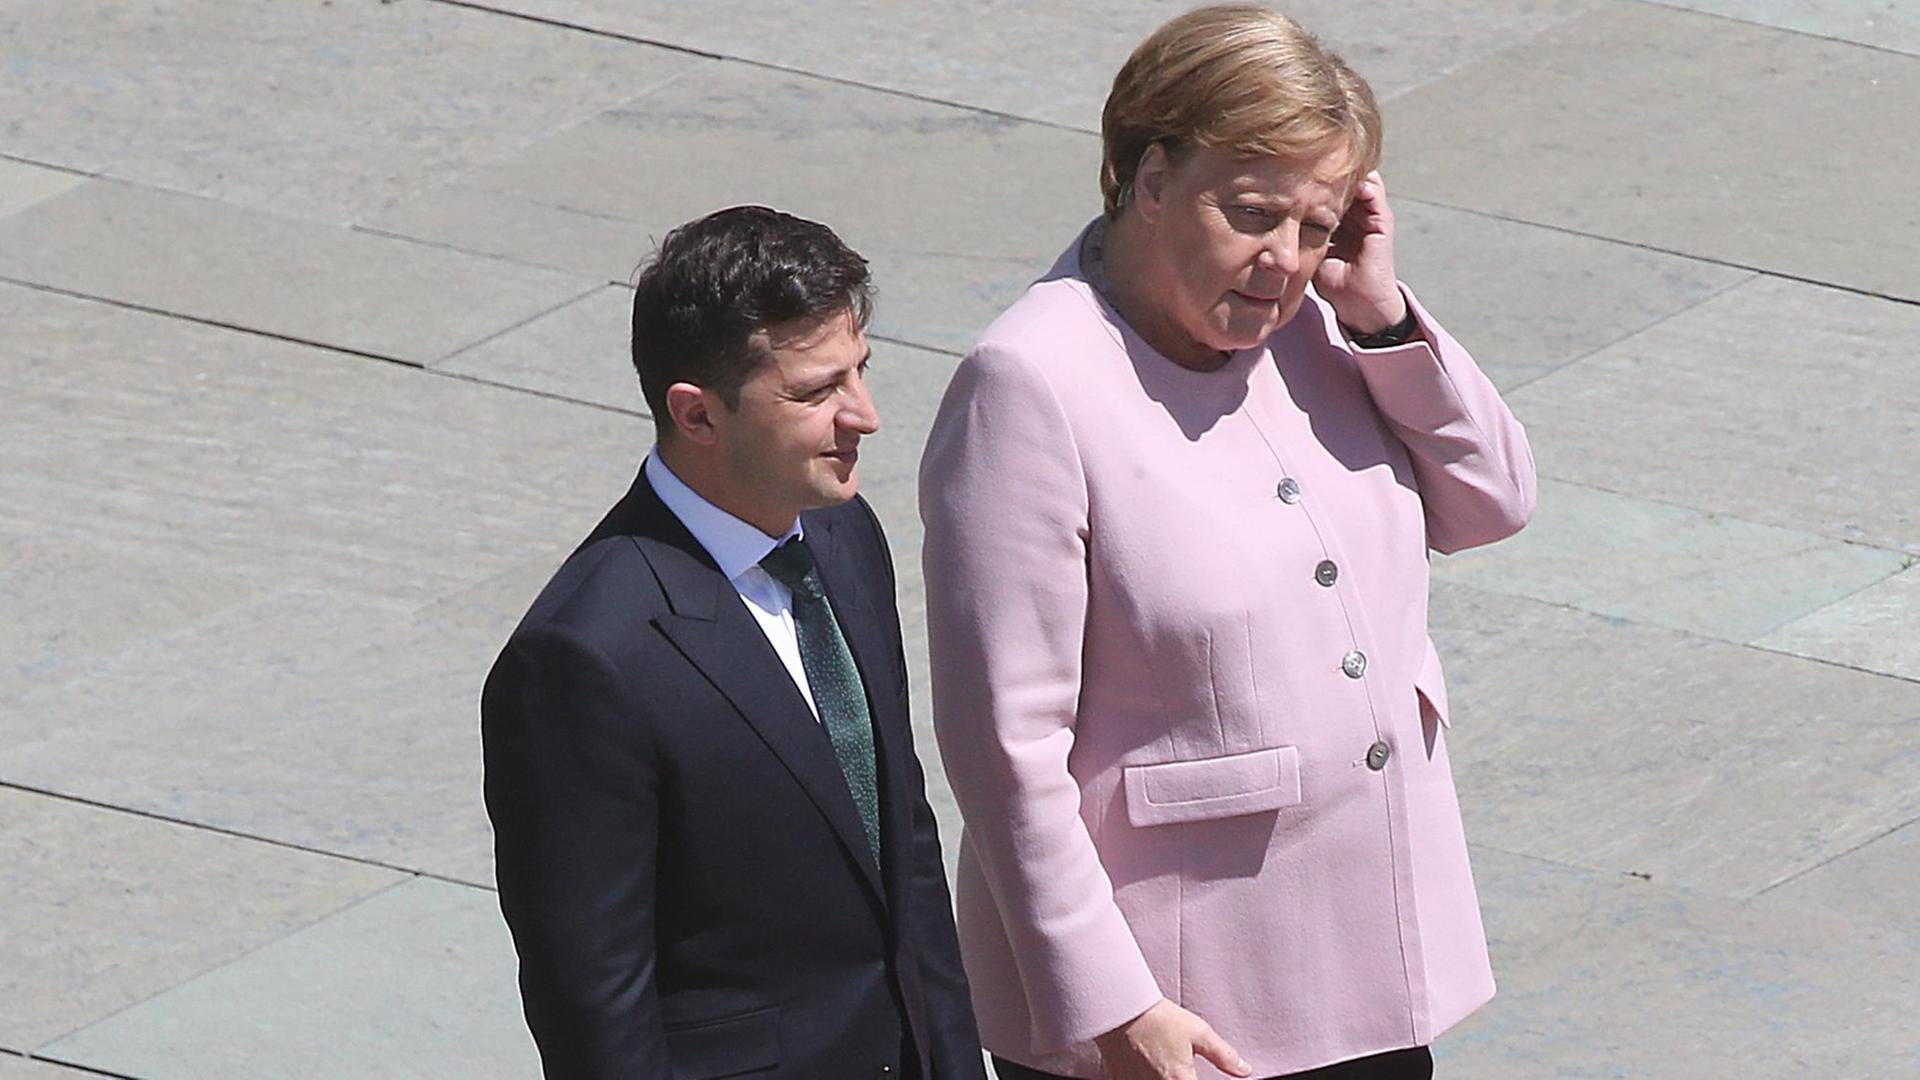 Bundeskanzlerin Angela Merkel (CDU), gekleidet in einem rosa Blazer, zusammen mit Wolodymyr Selenskyj, Präsident der Ukraine, bei seinem Antrittsbesuch in Deutschland vor dem Bundeskanzleramt.